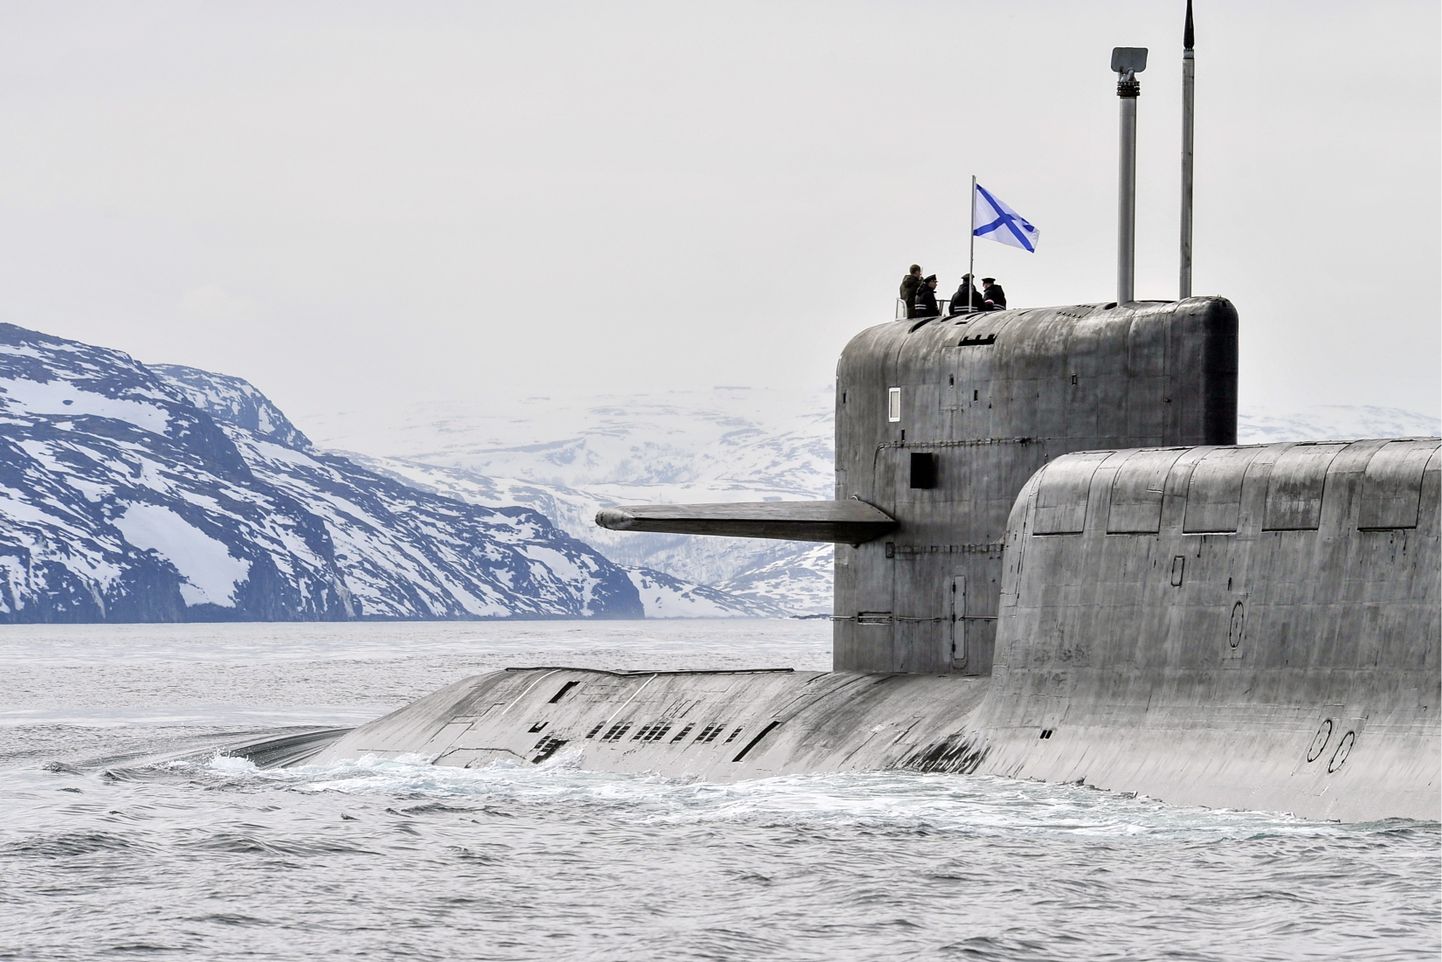 Venemaa tuumaallveelaev Karjala 2018. aasta aprillis Barentsi merel.